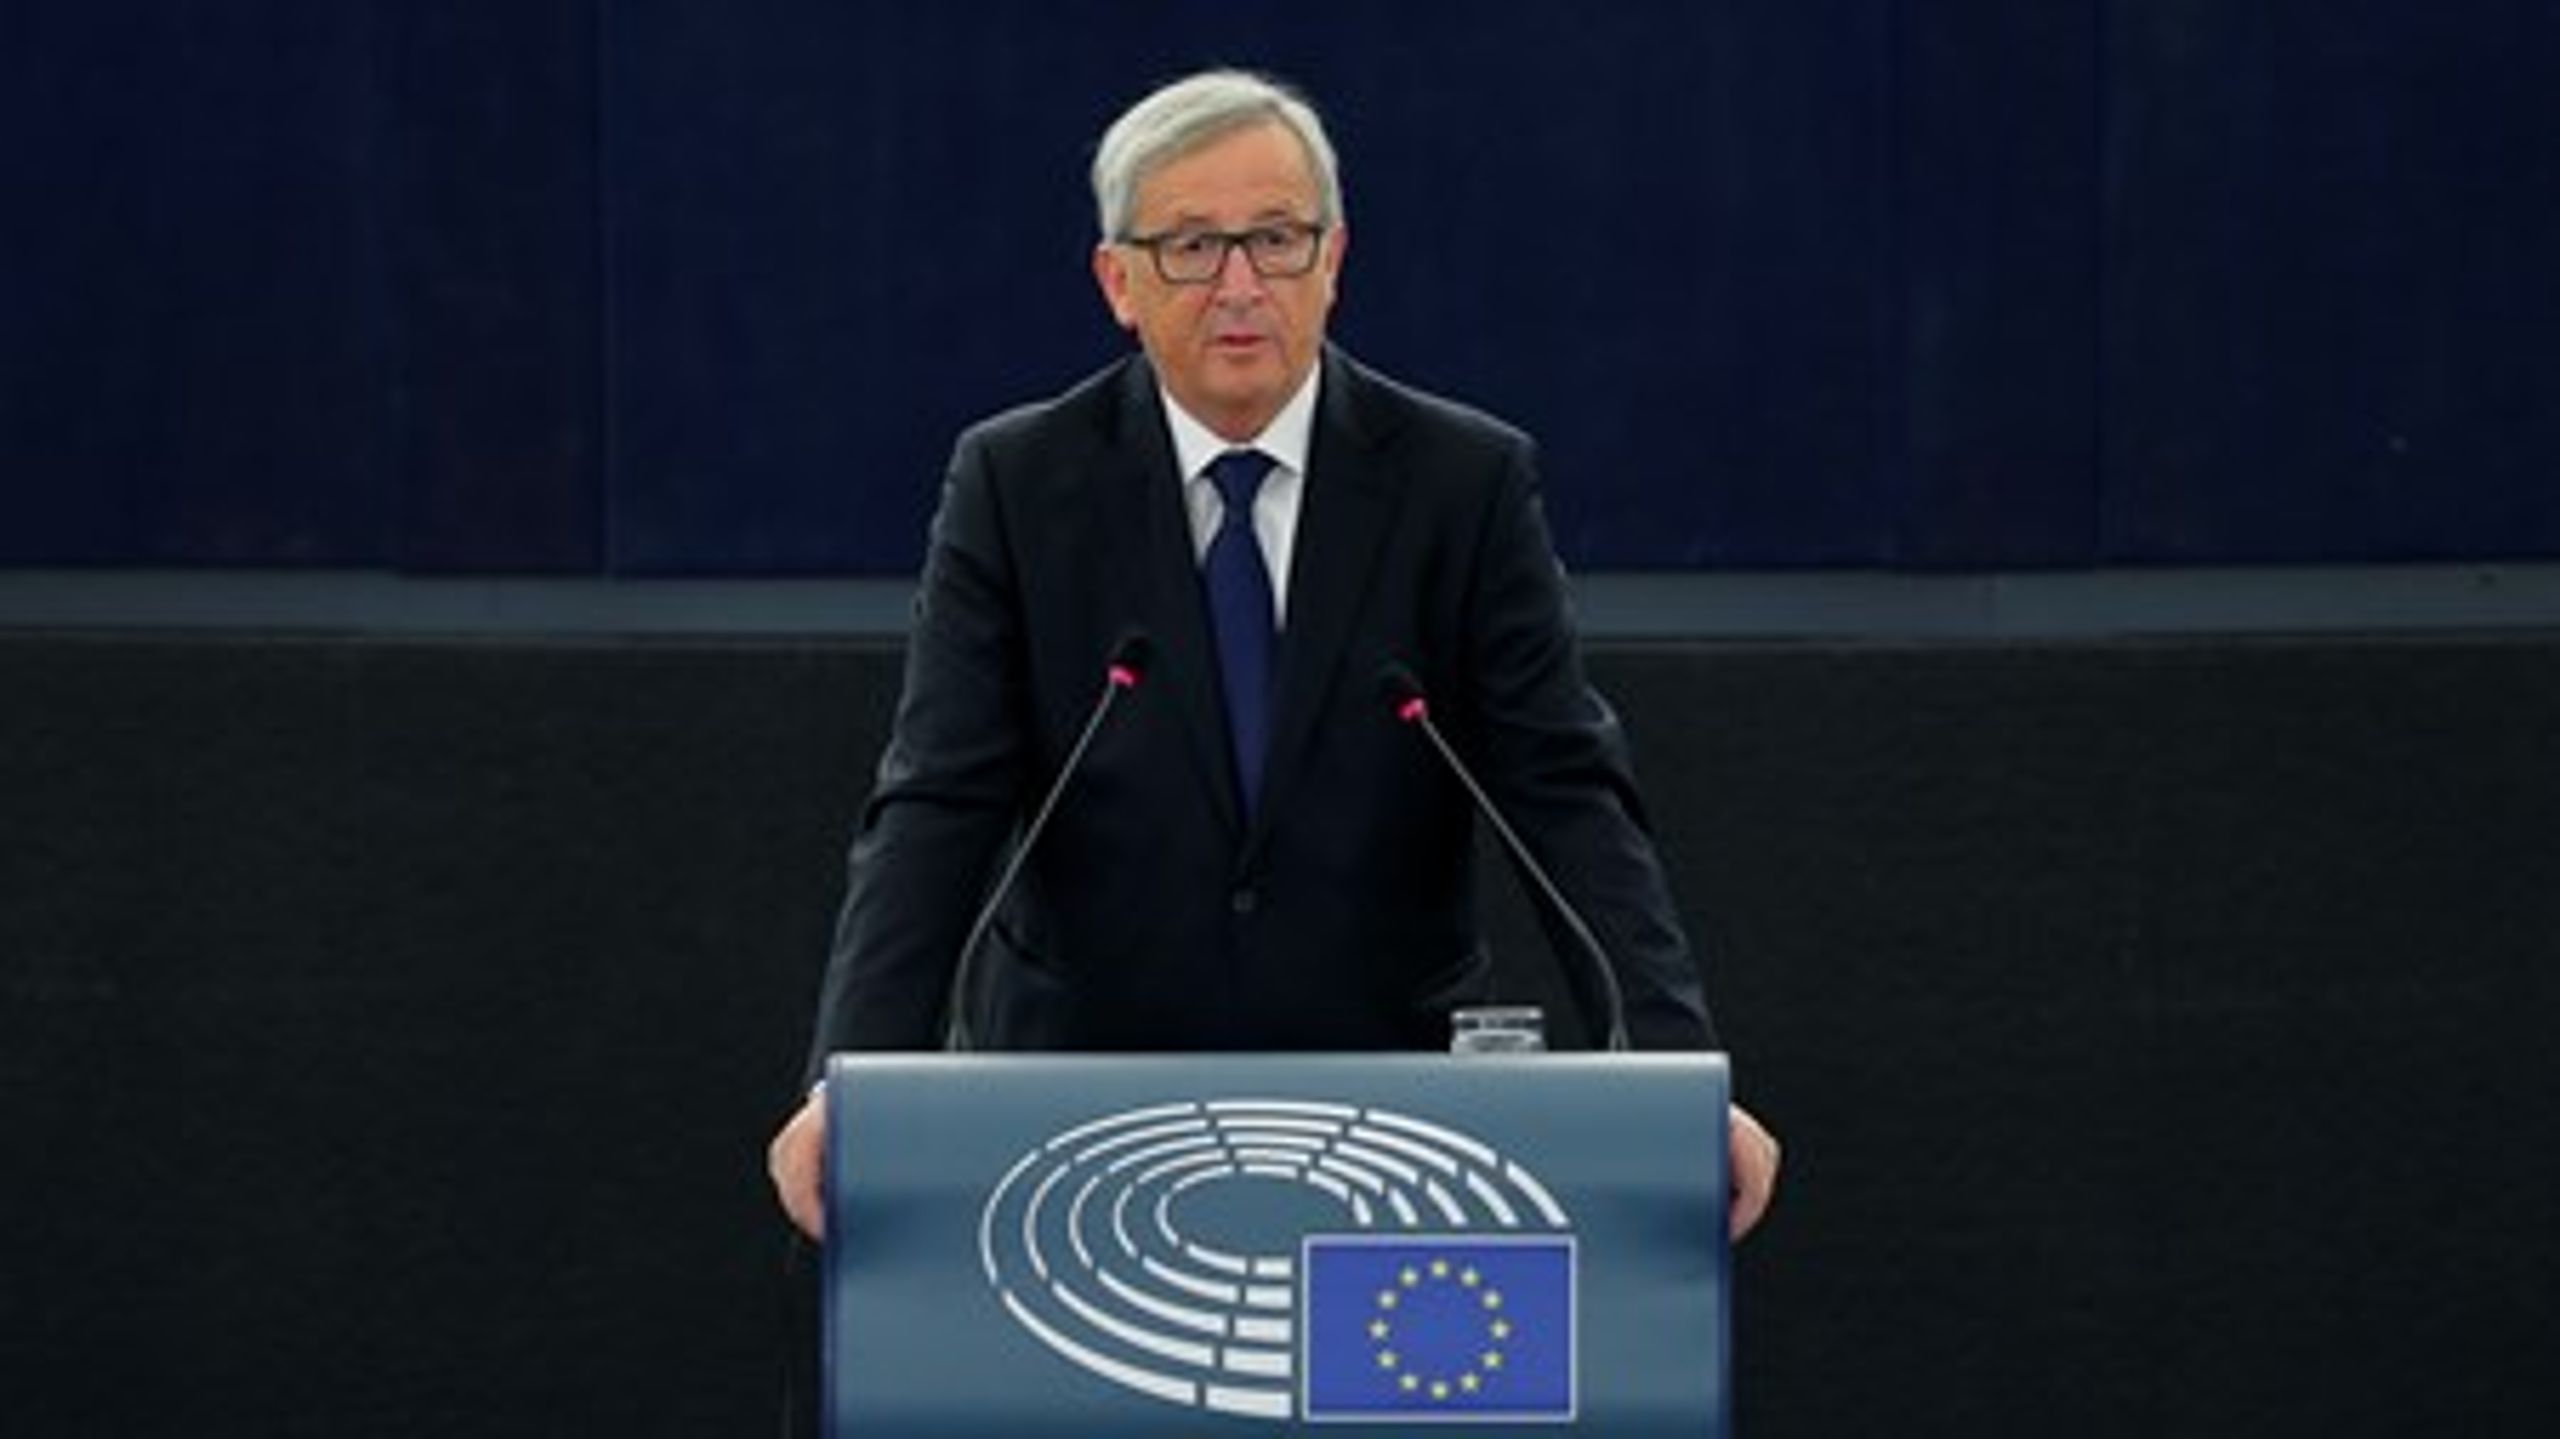 Flygtningekrisen ved Europas grænser kræver "modig, fælles handling" fra de europæiske lande, siger Jean-Claude Juncker.